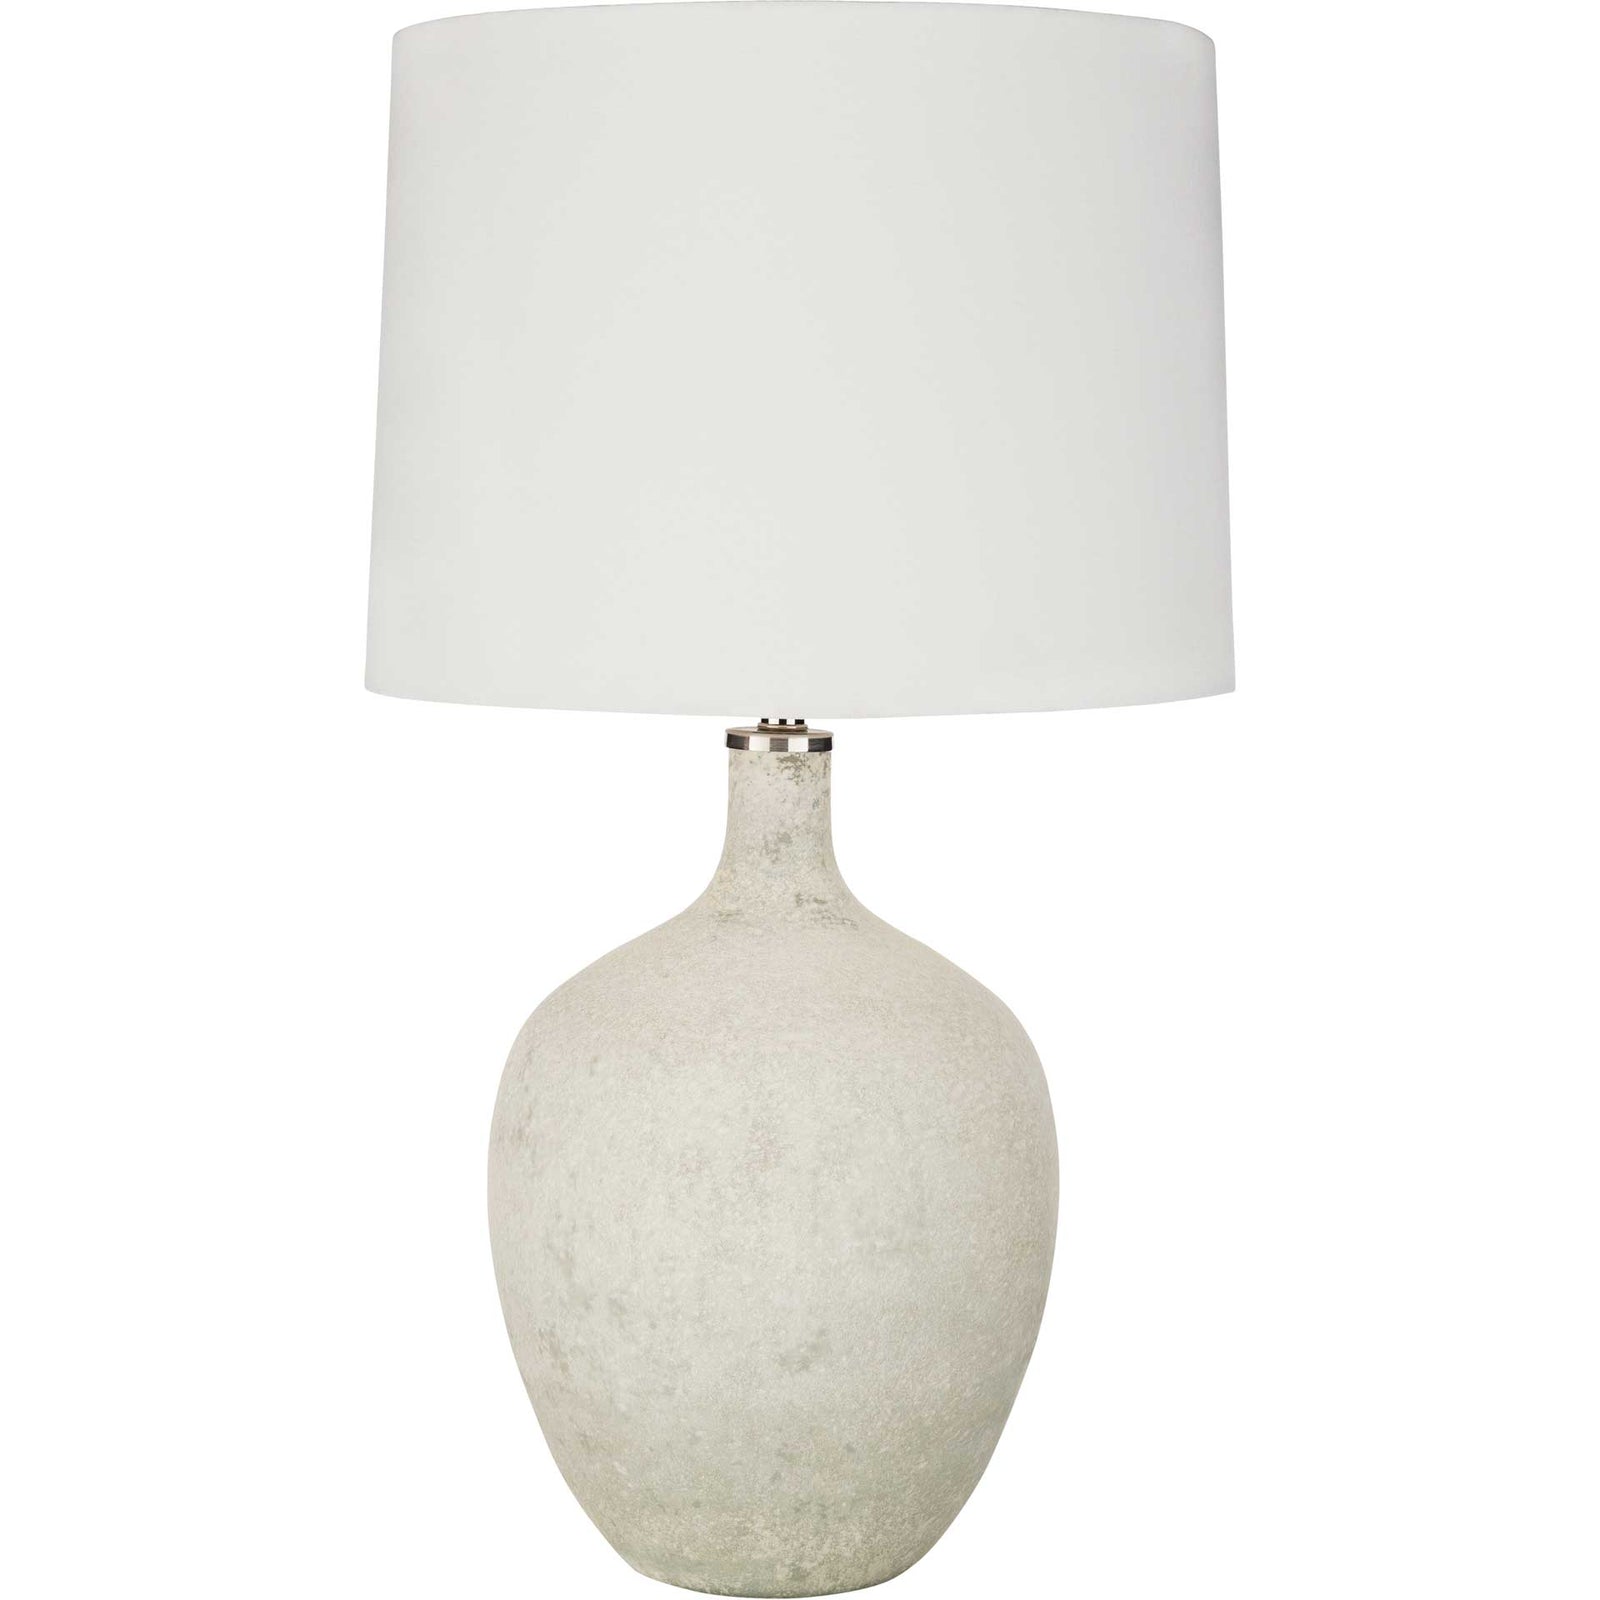 Duke Table Lamp Ivory/White